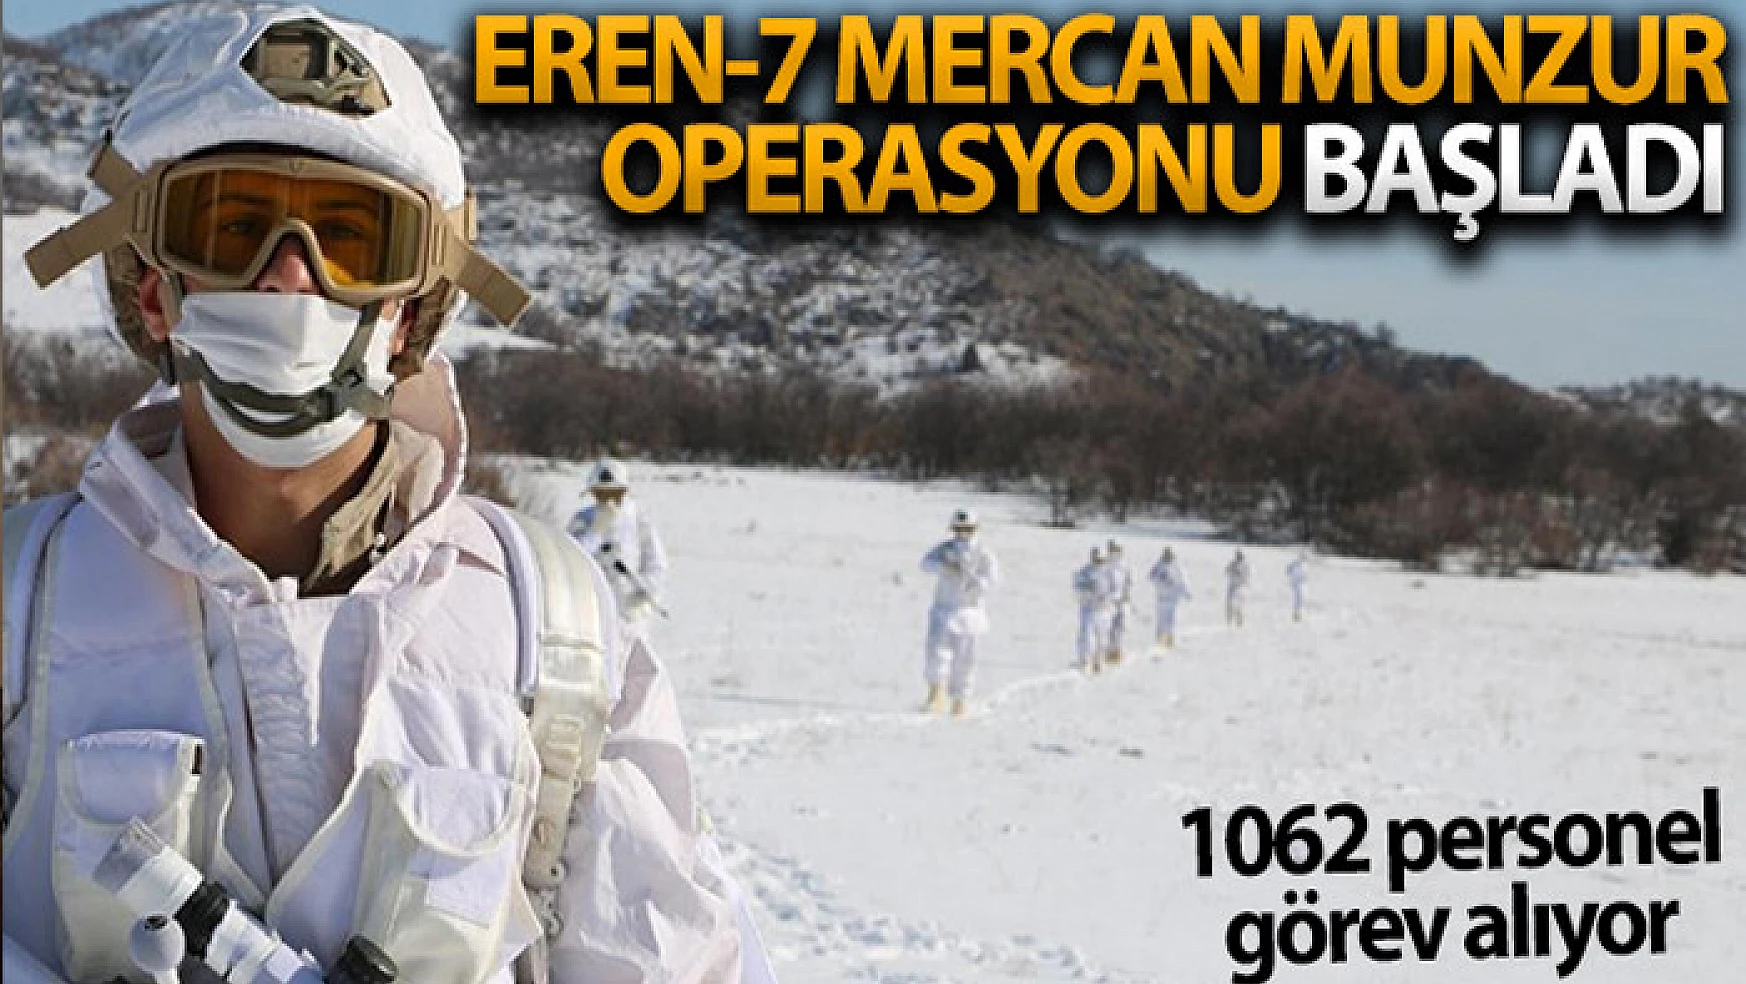 İçişleri Bakanlığı, Tunceli'de 'Eren-7 Mercan Munzur' Operasyonu'nu başlattı